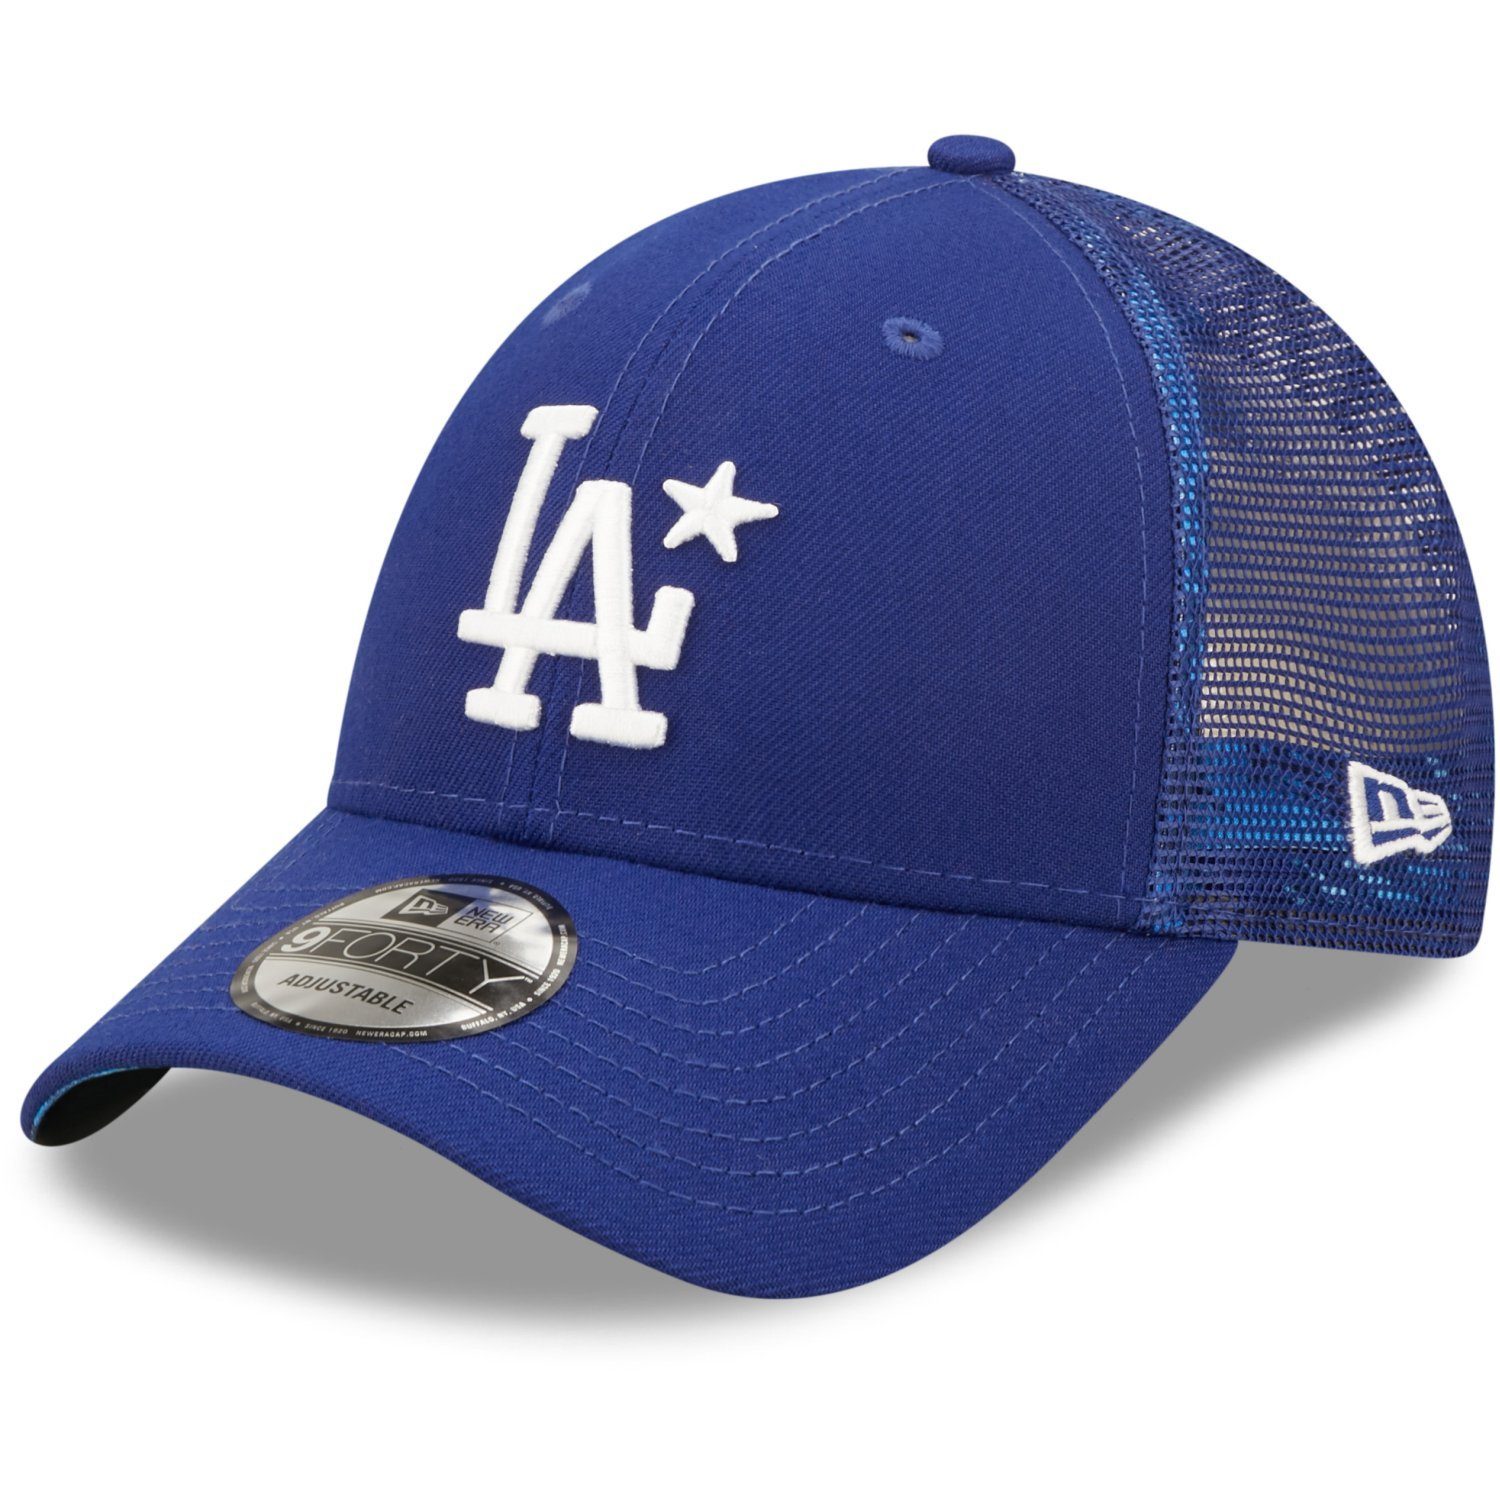 New Era Baseball GAME Cap ALLSTAR Dodgers 9FORTY LA